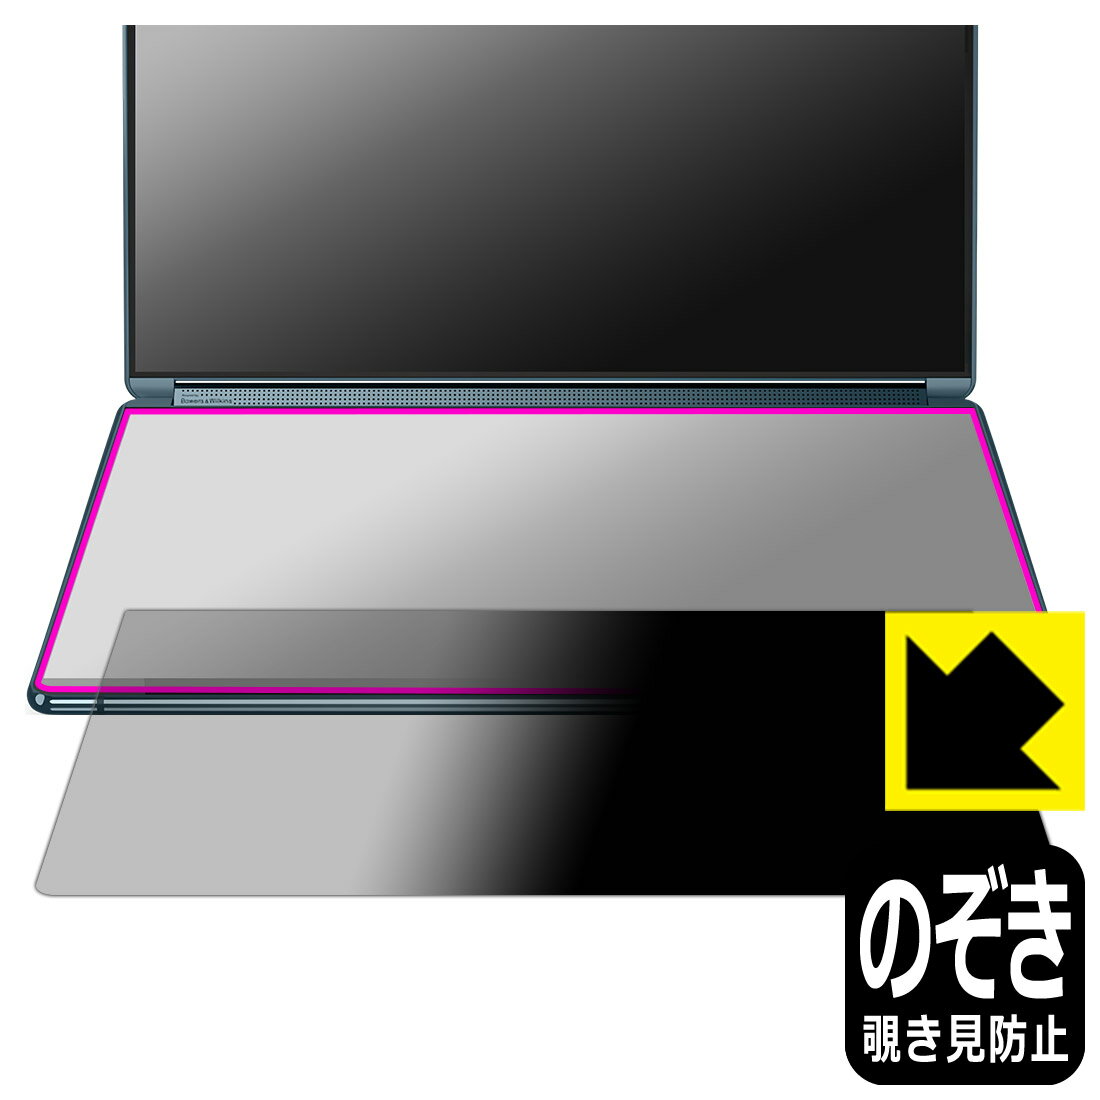 対応機種●対応機種 : Lenovo Yoga Book 9i Gen 8専用の商品です。●製品内容 : 2nd.ディスプレイ用フィルム1枚・クリーニングワイプ1個●特殊ブラインド加工で360°全方向のぞき見防止！まわりの視線からプライバシーを保護します。『覗き見防止(非光沢)の保護フィルム』●高品質の素材を使用。日本国内の自社工場で製造し出荷しています。 ★貼り付け失敗交換サービス対象商品★ 国内自社工場製造・発送だからできる 安心の製品保証とサポート ■製品保証 お届けした製品が誤っていたり、不具合があった場合などには、お届けから1ヶ月以内にメールにてお問い合わせください。交換等対応させていただきます。[キャンセル・返品（返金・交換）について] ■■貼り付け失敗時の交換サービス■■貼り付けに失敗しても1回だけ無償交換ができます。(失敗したフィルムをお送りいただき、新品に無償交換します。往復の送料のみお客様にご負担をお願いいたします。詳しくは製品に同封の紙をご確認ください) ■■保護フィルム貼り付け代行サービス■■保護フィルムの貼り付け作業に自信がない方には、PDA工房で貼り付け作業を代行いたします。(PDA工房の保護フィルムのみが対象です。詳しくは製品に同封の紙をご確認ください) Privacy Shield【覗き見防止・反射低減】保護フィルム 素材説明 ■360°上下左右からののぞき見を防止！正面からは画面がはっきり見えますが、上下左右30°の外側からでは画面が暗くなって見えません。電車の中など、周りの視線が気になるシーンで、メッセージやメールのやり取りを行うことができます。また、業務などで個人情報を扱う場合など、プライバシーに配慮する必要がある場合はこのフィルムがおすすめです。※仕様上、一般的な保護シートより光線透過率が下がります(約50%)。ご了承ください。■画面の映り込みを抑える反射防止タイプ！表面に微細な凹凸を作ることにより、外光を乱反射させギラツキを抑える「アンチグレア加工」がされております。屋外での太陽光の映り込み、屋内でも蛍光灯などの映り込みが気になるシーンが多い方におすすめです。また、指紋がついた場合でも目立ちにくいという特長があります。■防指紋のハードコート！さらさらな指ざわり！指滑りはさらさらな使用感でストレスのない操作・入力が可能です。ハードコート加工がされており、キズや擦れに強くなっています。簡単にキズがつかず長くご利用いただけます。反射防止のアンチグレア加工で指紋が目立ちにくい上、表面は防汚コーティングがされており、皮脂や汚れがつきにくく、また、落ちやすくなっています。■気泡の入りにくい特殊な自己吸着タイプ接着面は気泡の入りにくい特殊な自己吸着タイプです。素材に柔軟性があり、貼り付け作業も簡単にできます。また、はがすときにガラス製フィルムのように割れてしまうことはありません。貼り直しが何度でもできるので、正しい位置へ貼り付けられるまでやり直すことができます。■安心の日本製高品質の素材を使用。日本国内の弊社工場で加工している Made in Japan です。 【ポスト投函送料無料】商品は【ポスト投函発送 (追跡可能メール便)】で発送します。お急ぎ、配達日時を指定されたい方は以下のクーポンを同時購入ください。【お急ぎ便クーポン】　プラス110円(税込)で速達扱いでの発送。お届けはポストへの投函となります。【配達日時指定クーポン】　プラス550円(税込)で配達日時を指定し、宅配便で発送させていただきます。【お急ぎ便クーポン】はこちらをクリック【配達日時指定クーポン】はこちらをクリック